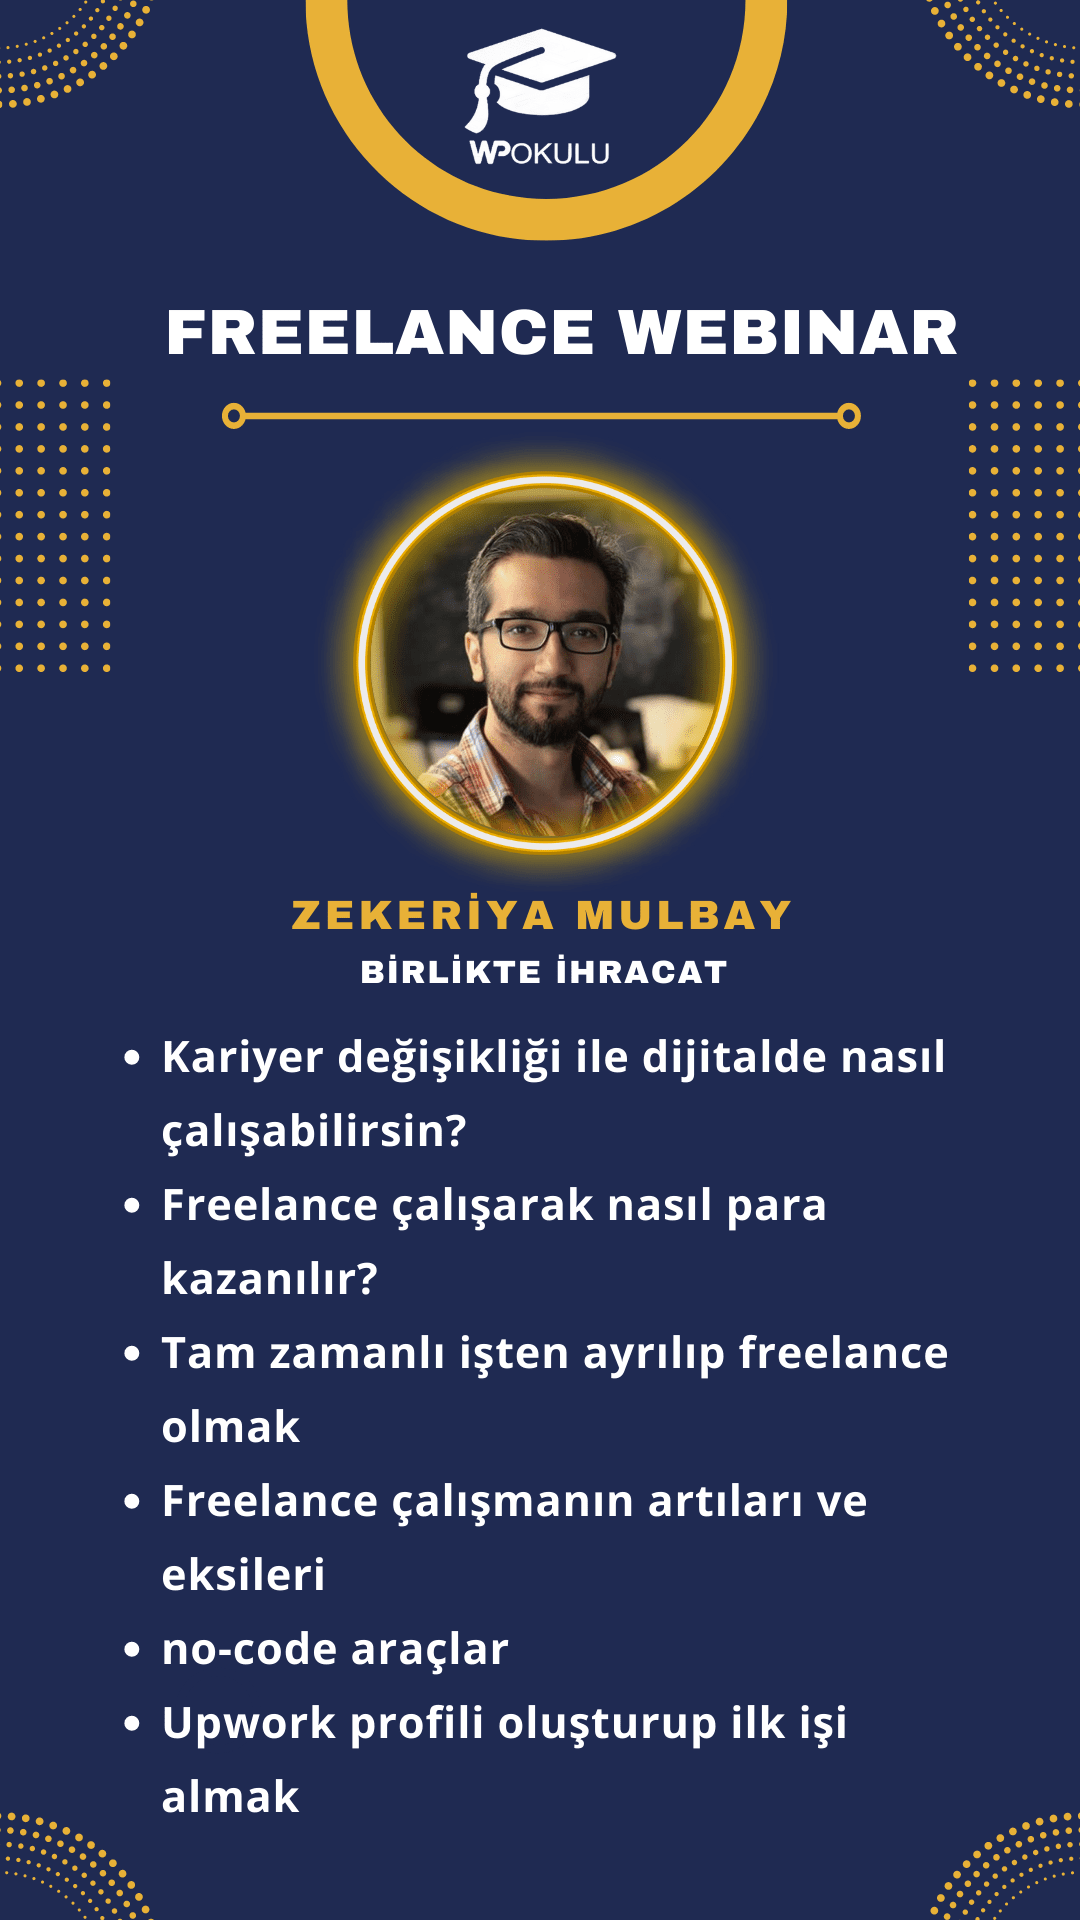 Zekeriya Mulbay Freelance çalışmak konusundaki webinarı